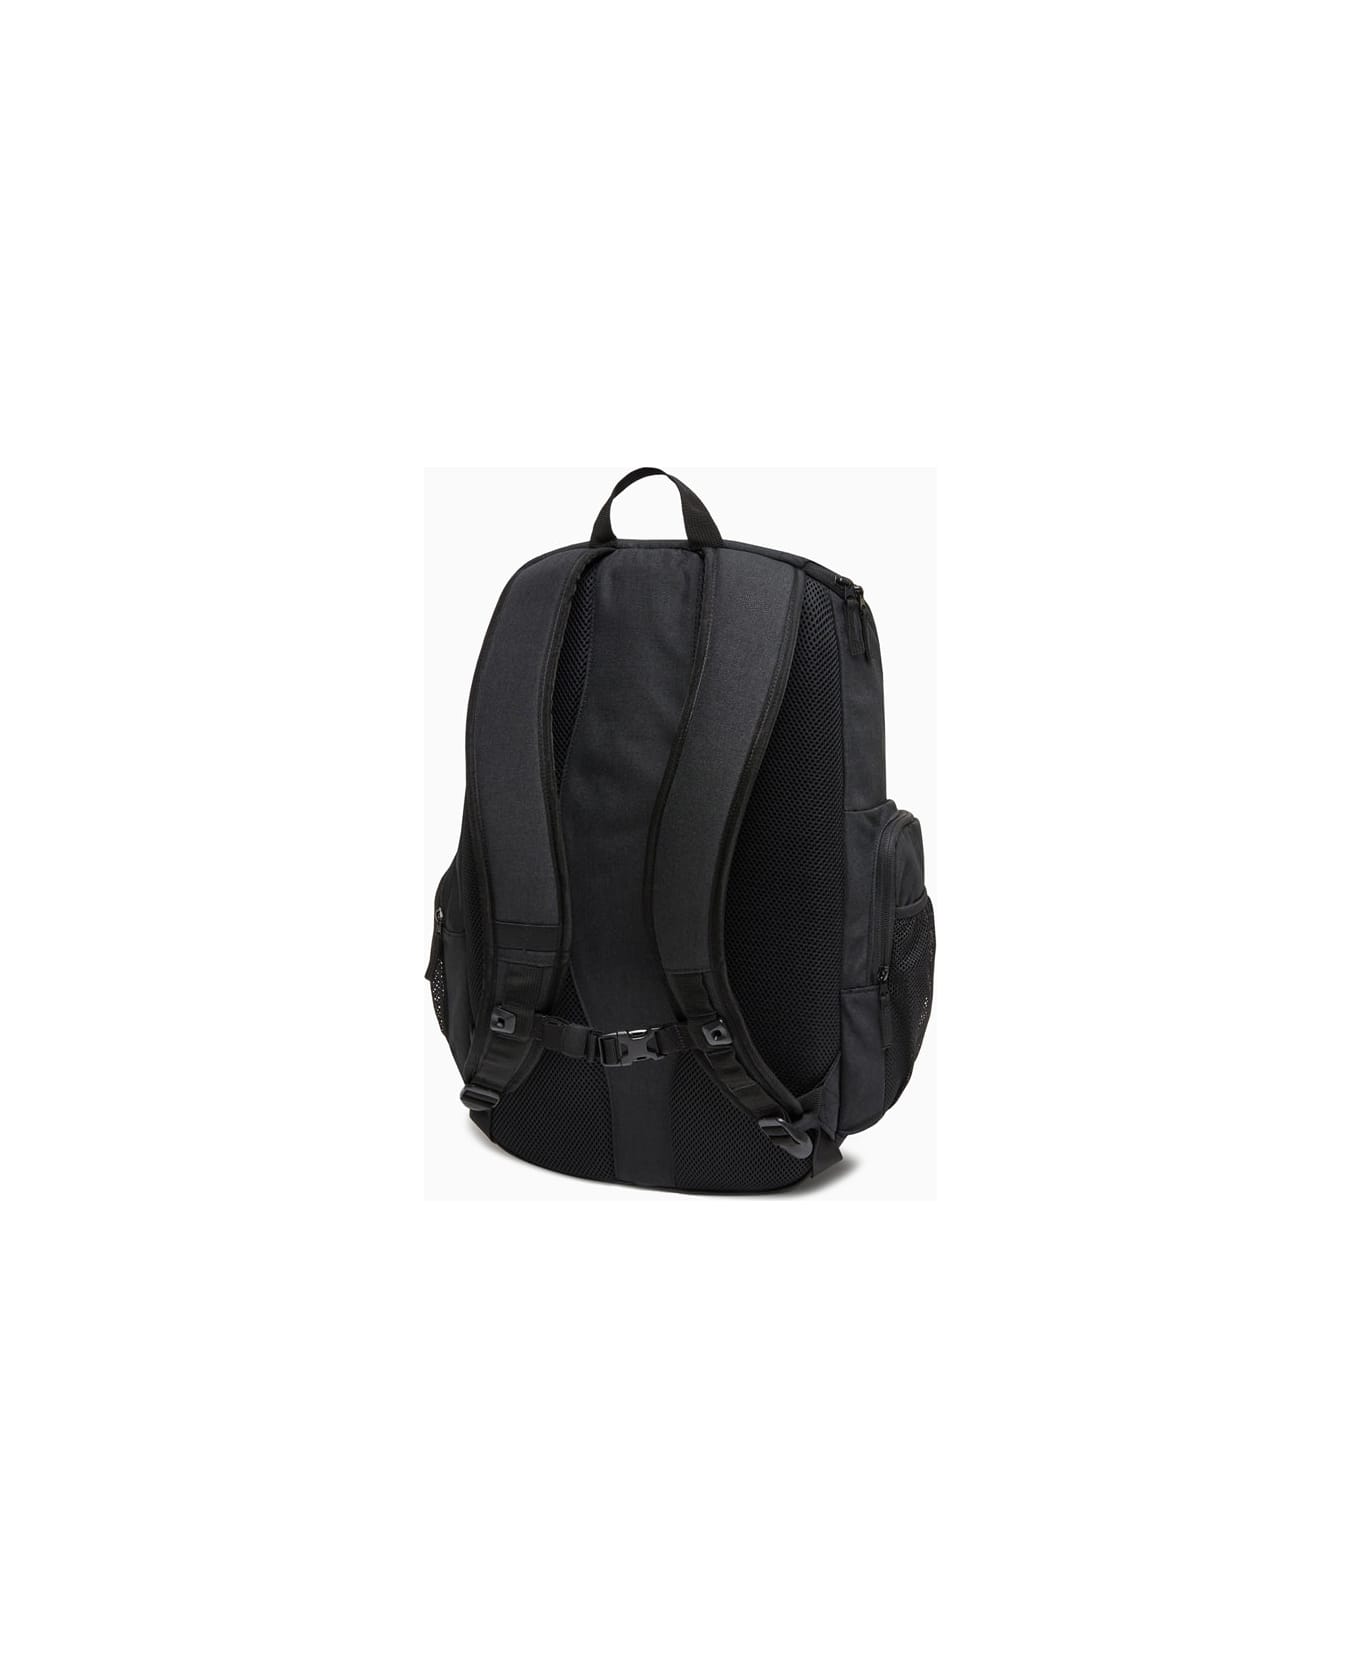 Oakley Enduro 3.0 Big Backpack バックパック